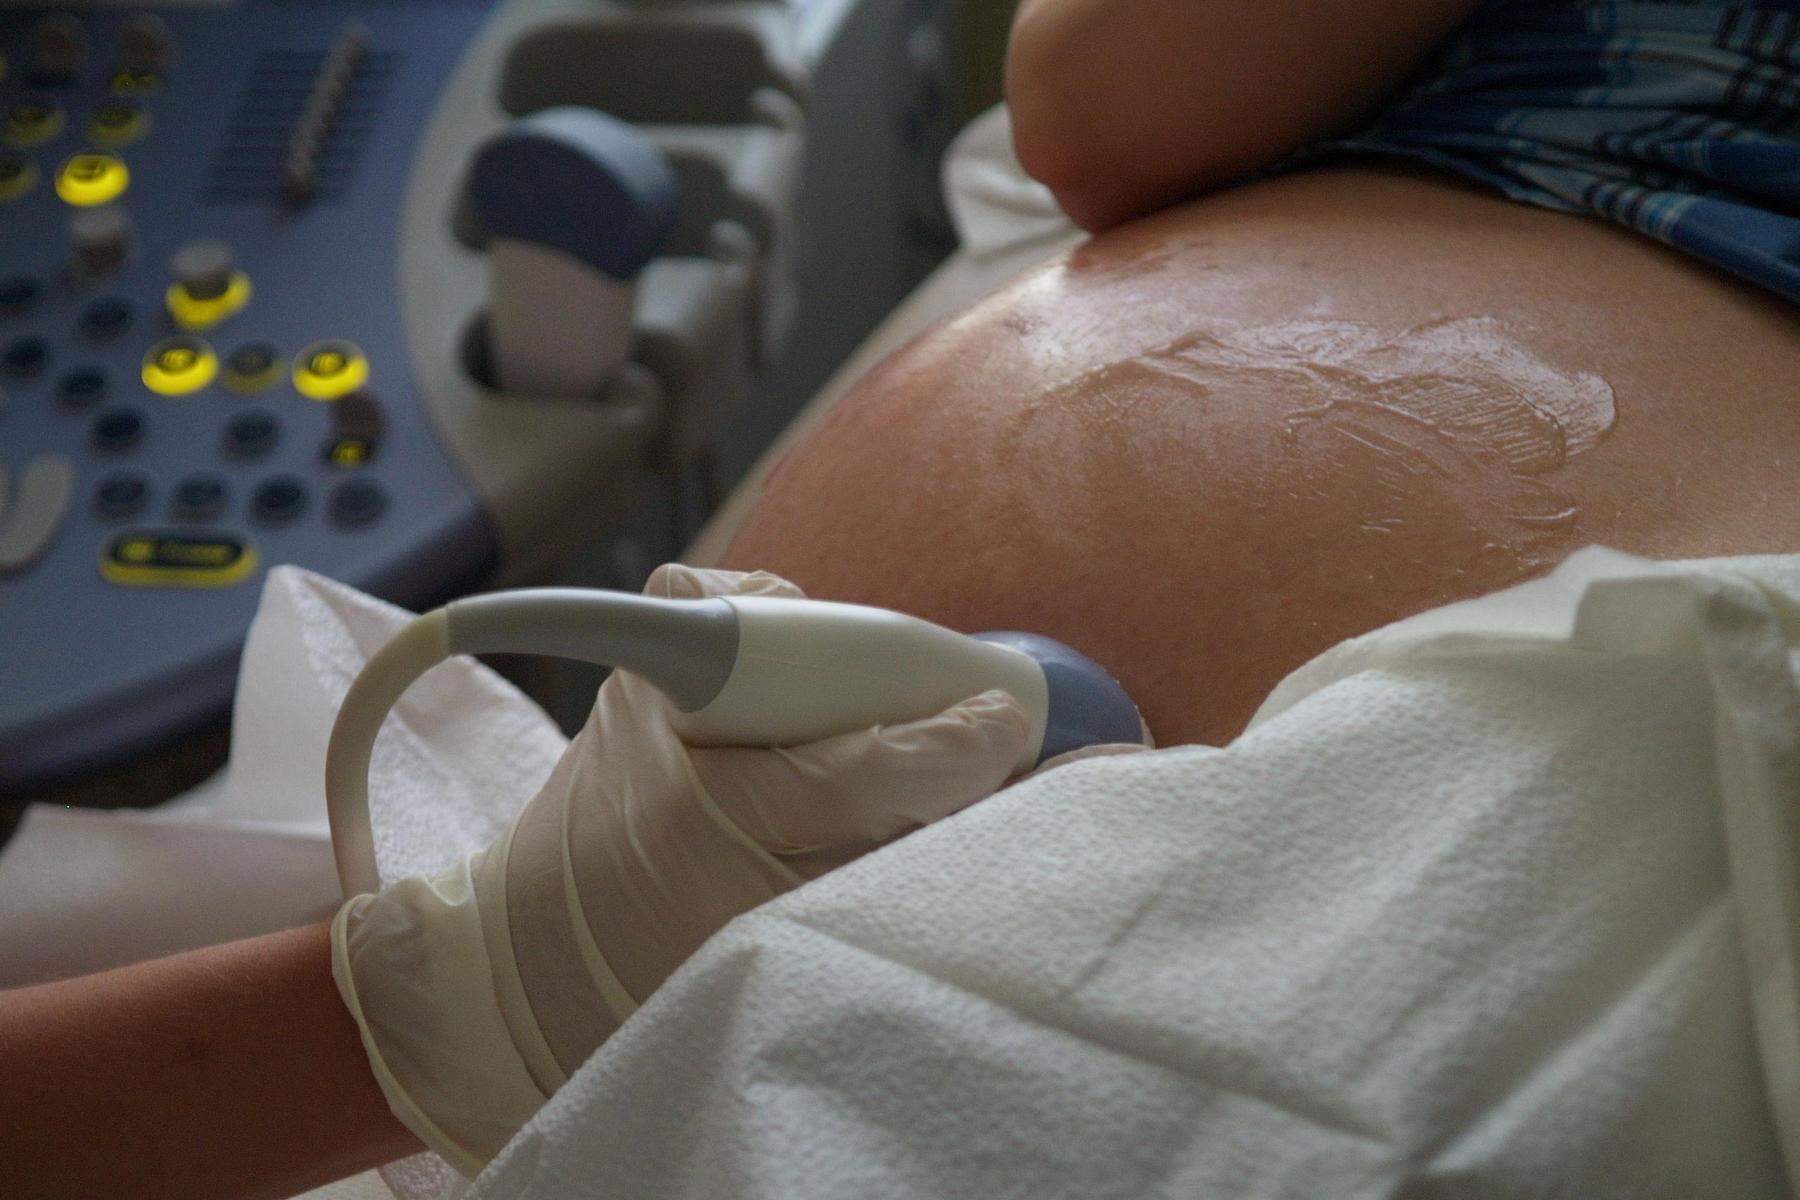 Schwangere verwechselt: Prager Spital führte irrtümlich eine Abtreibung durch